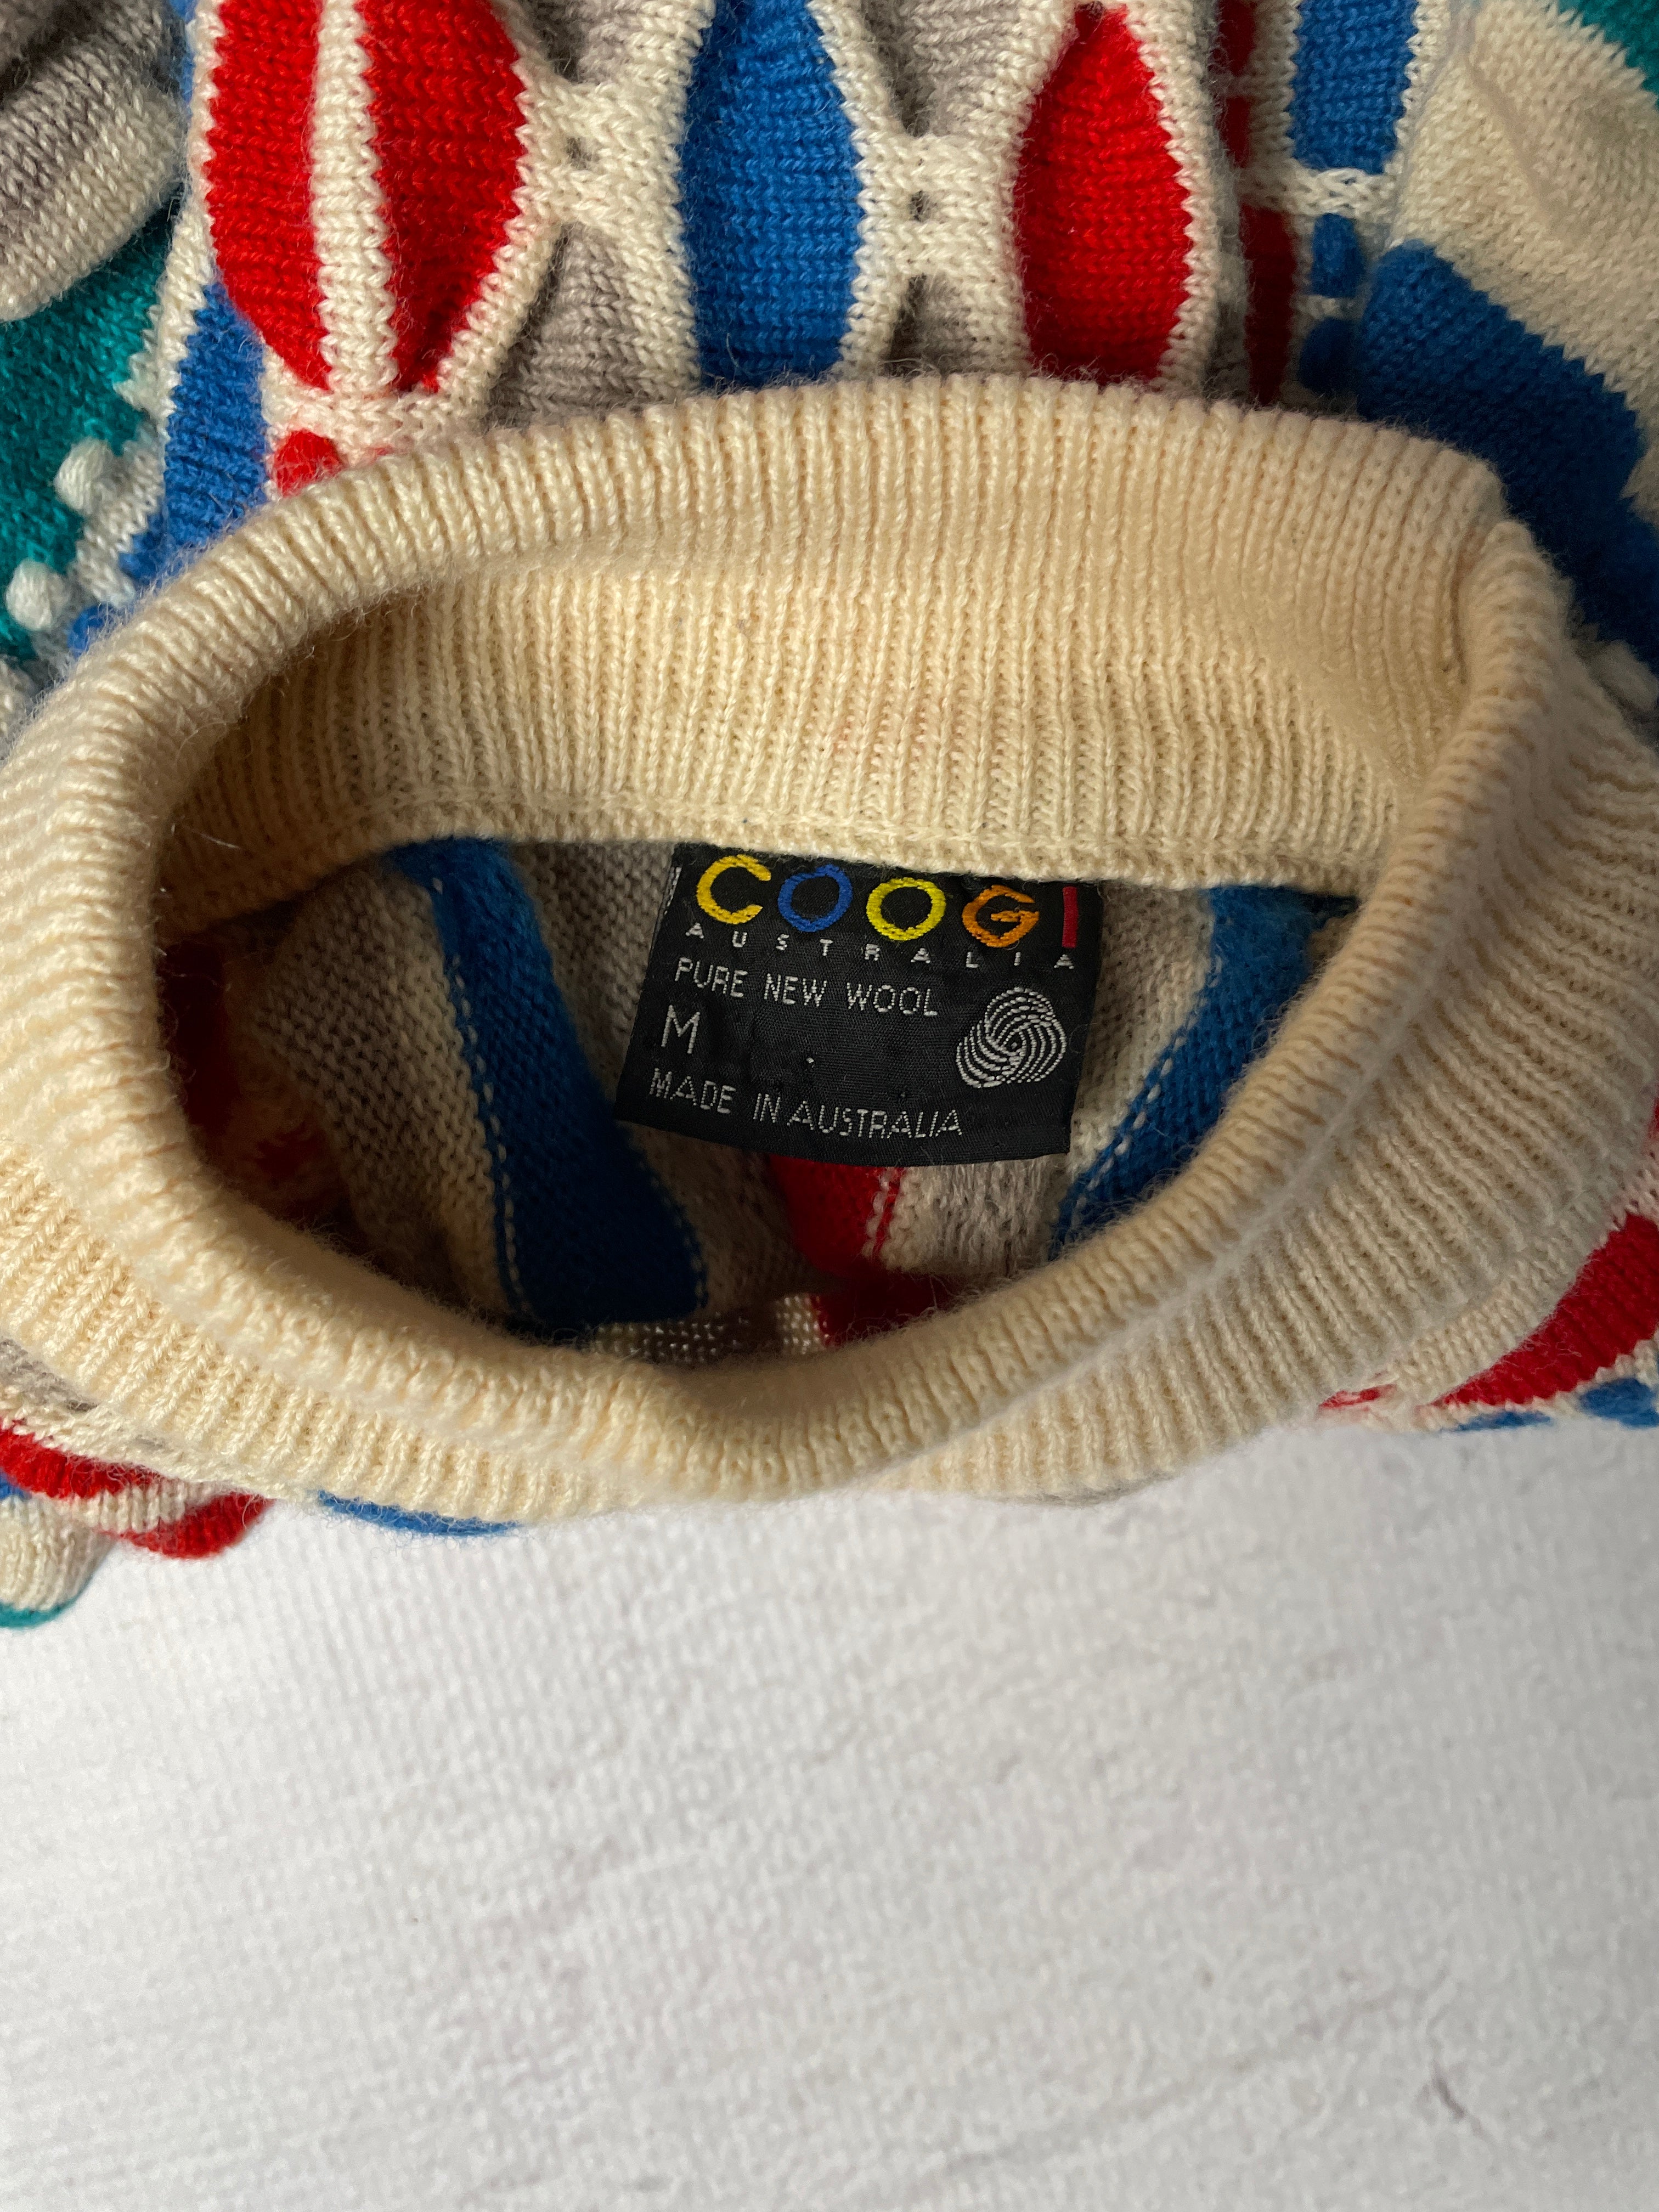 Vintage Coogi 3D Knitted Mockneck Sweater - Men's Small